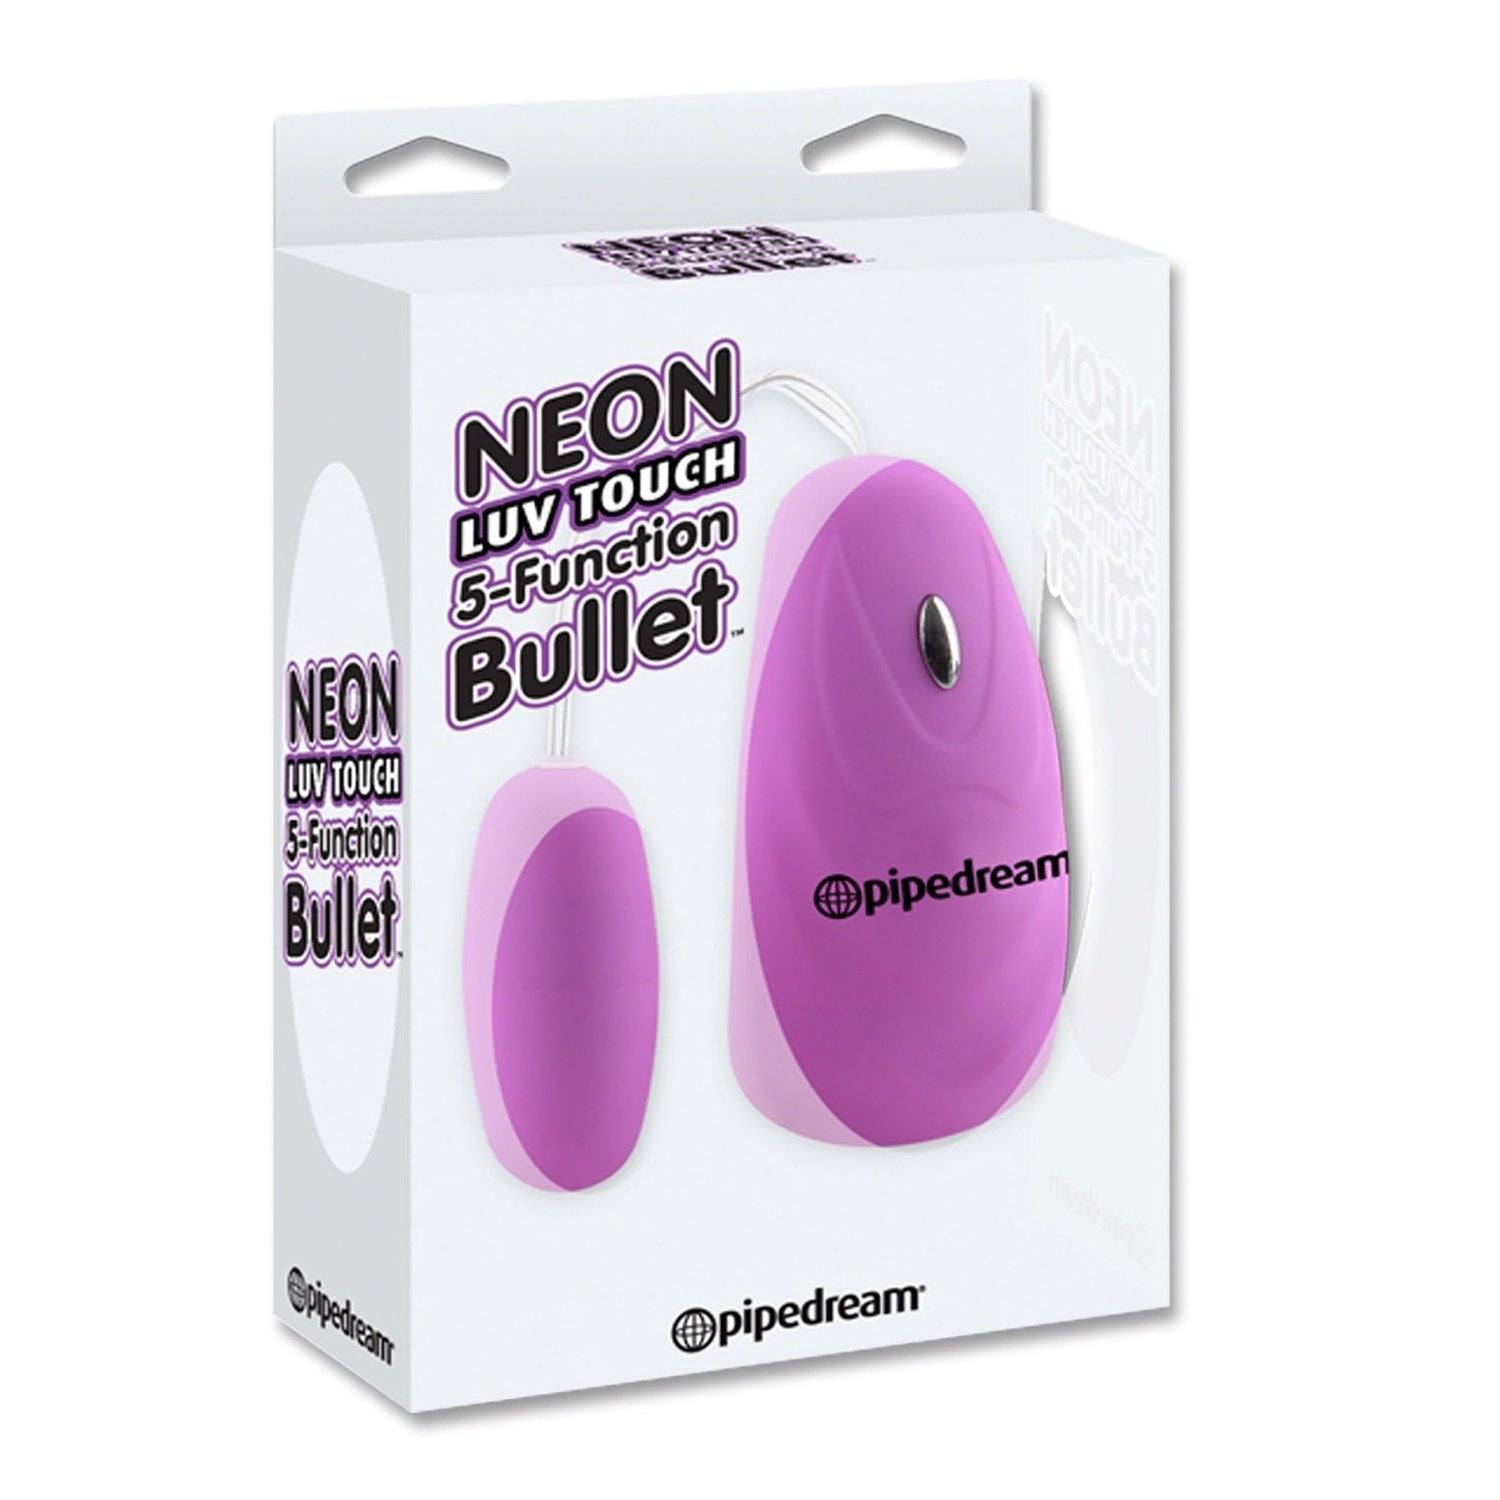 爱触摸 Neon 5 功能子弹头 - 紫色 5.7 厘米（2.25 英寸）子弹头 by Pipedream